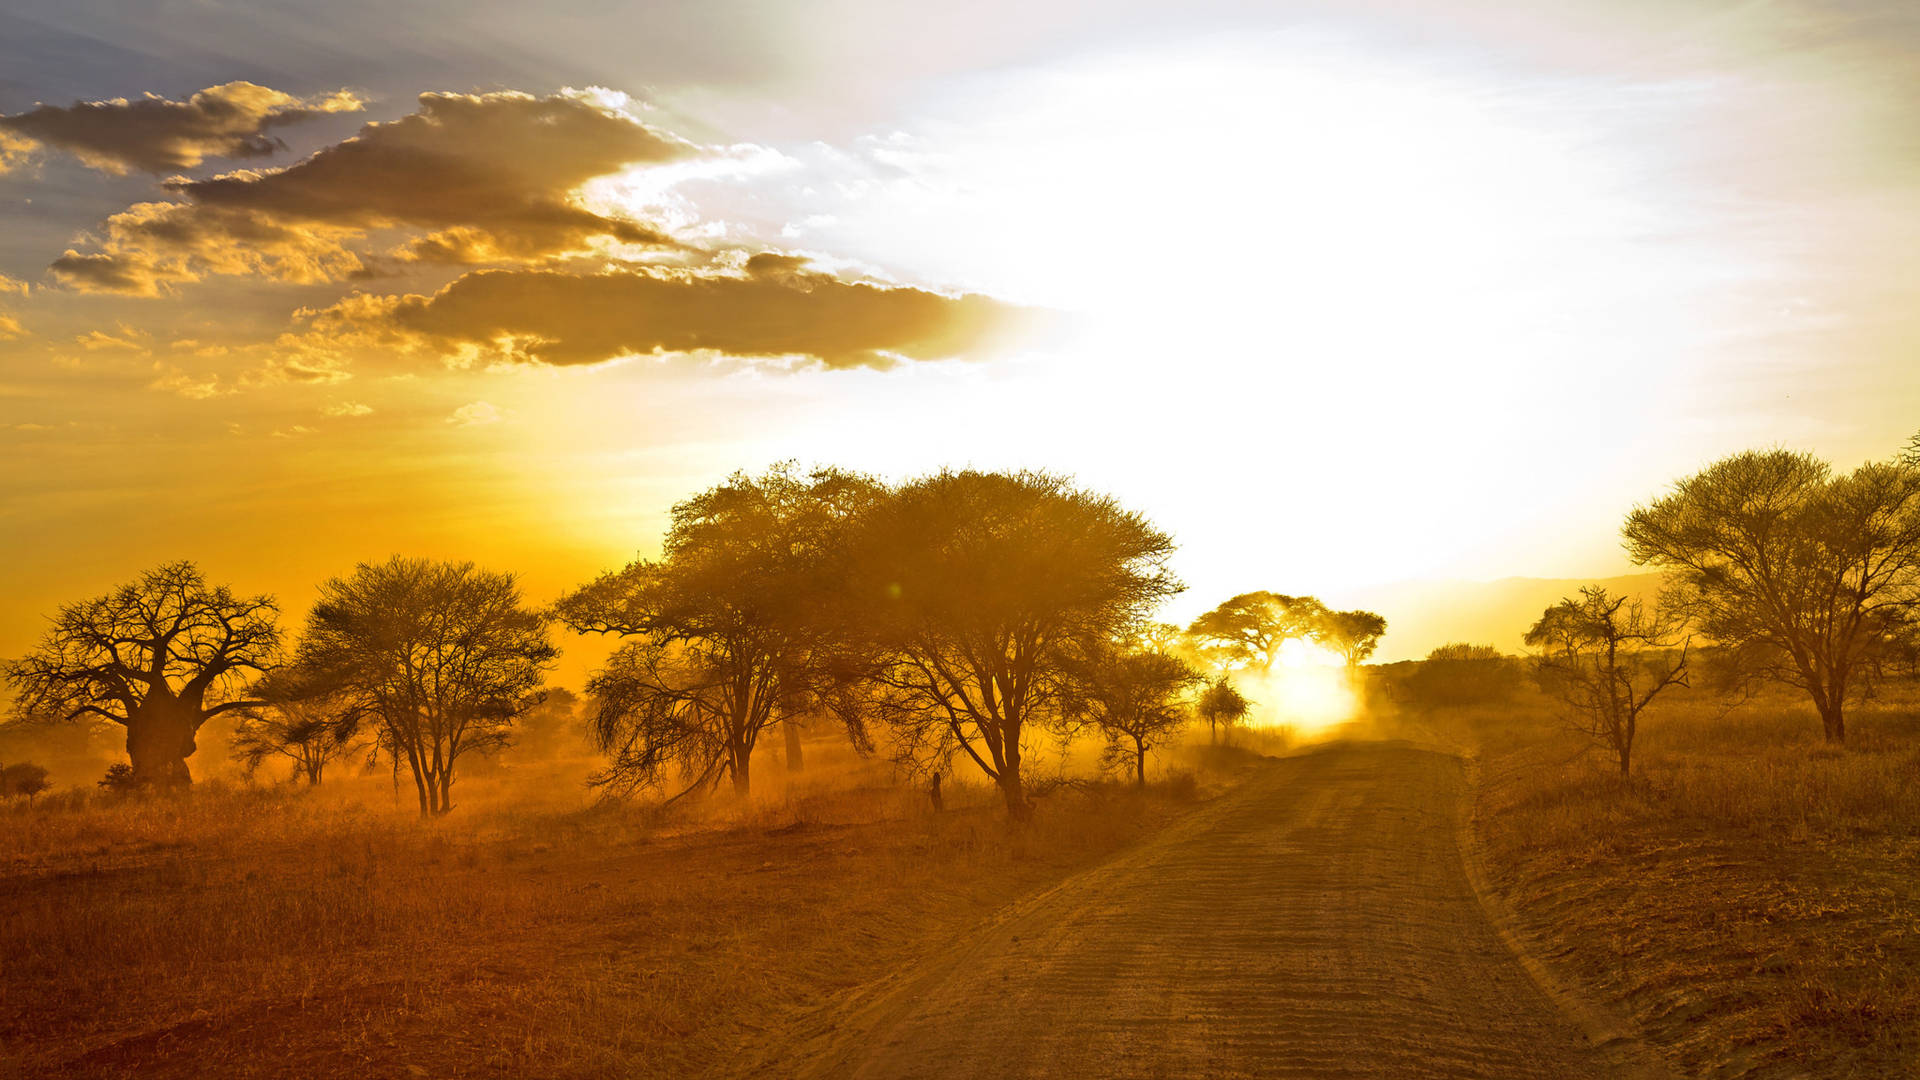 Desert Road In Africa 4K Wallpaper